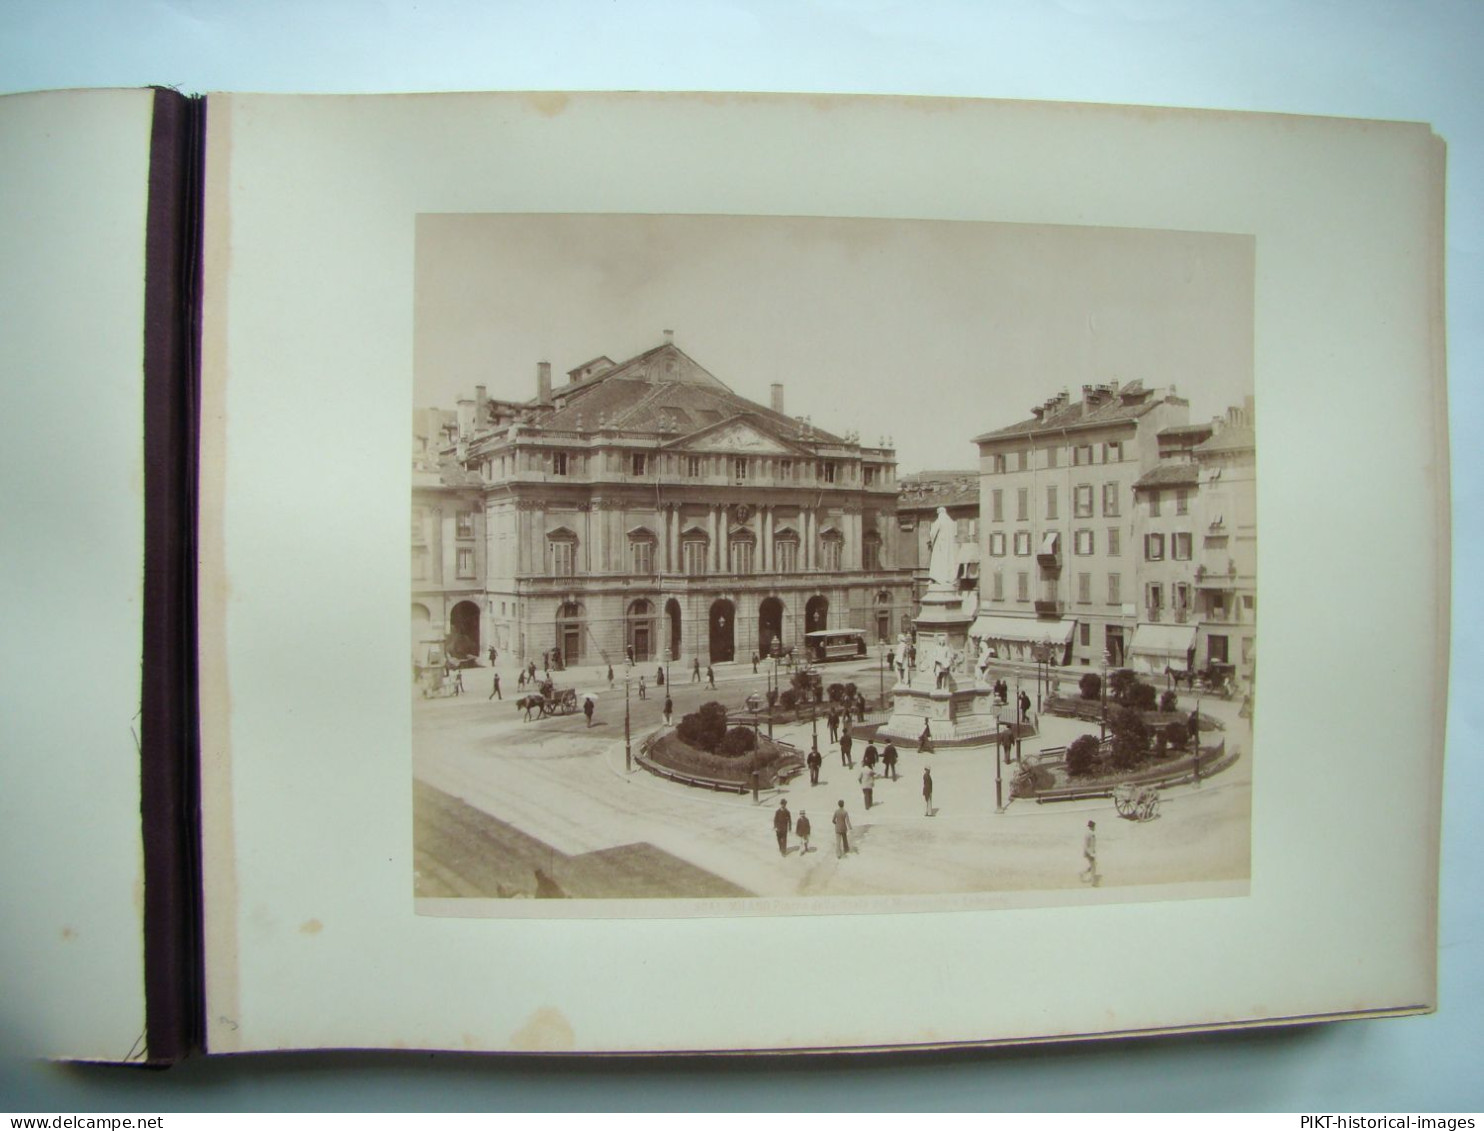 GRAND ALBUM PHOTOS 1870 FLORENCE VENISE TIRAGES ALBUMINÉS ANCIENS GRAND FORMAT Signés PHOTOGRAPHIES ITALIE TTBE - Ancianas (antes De 1900)